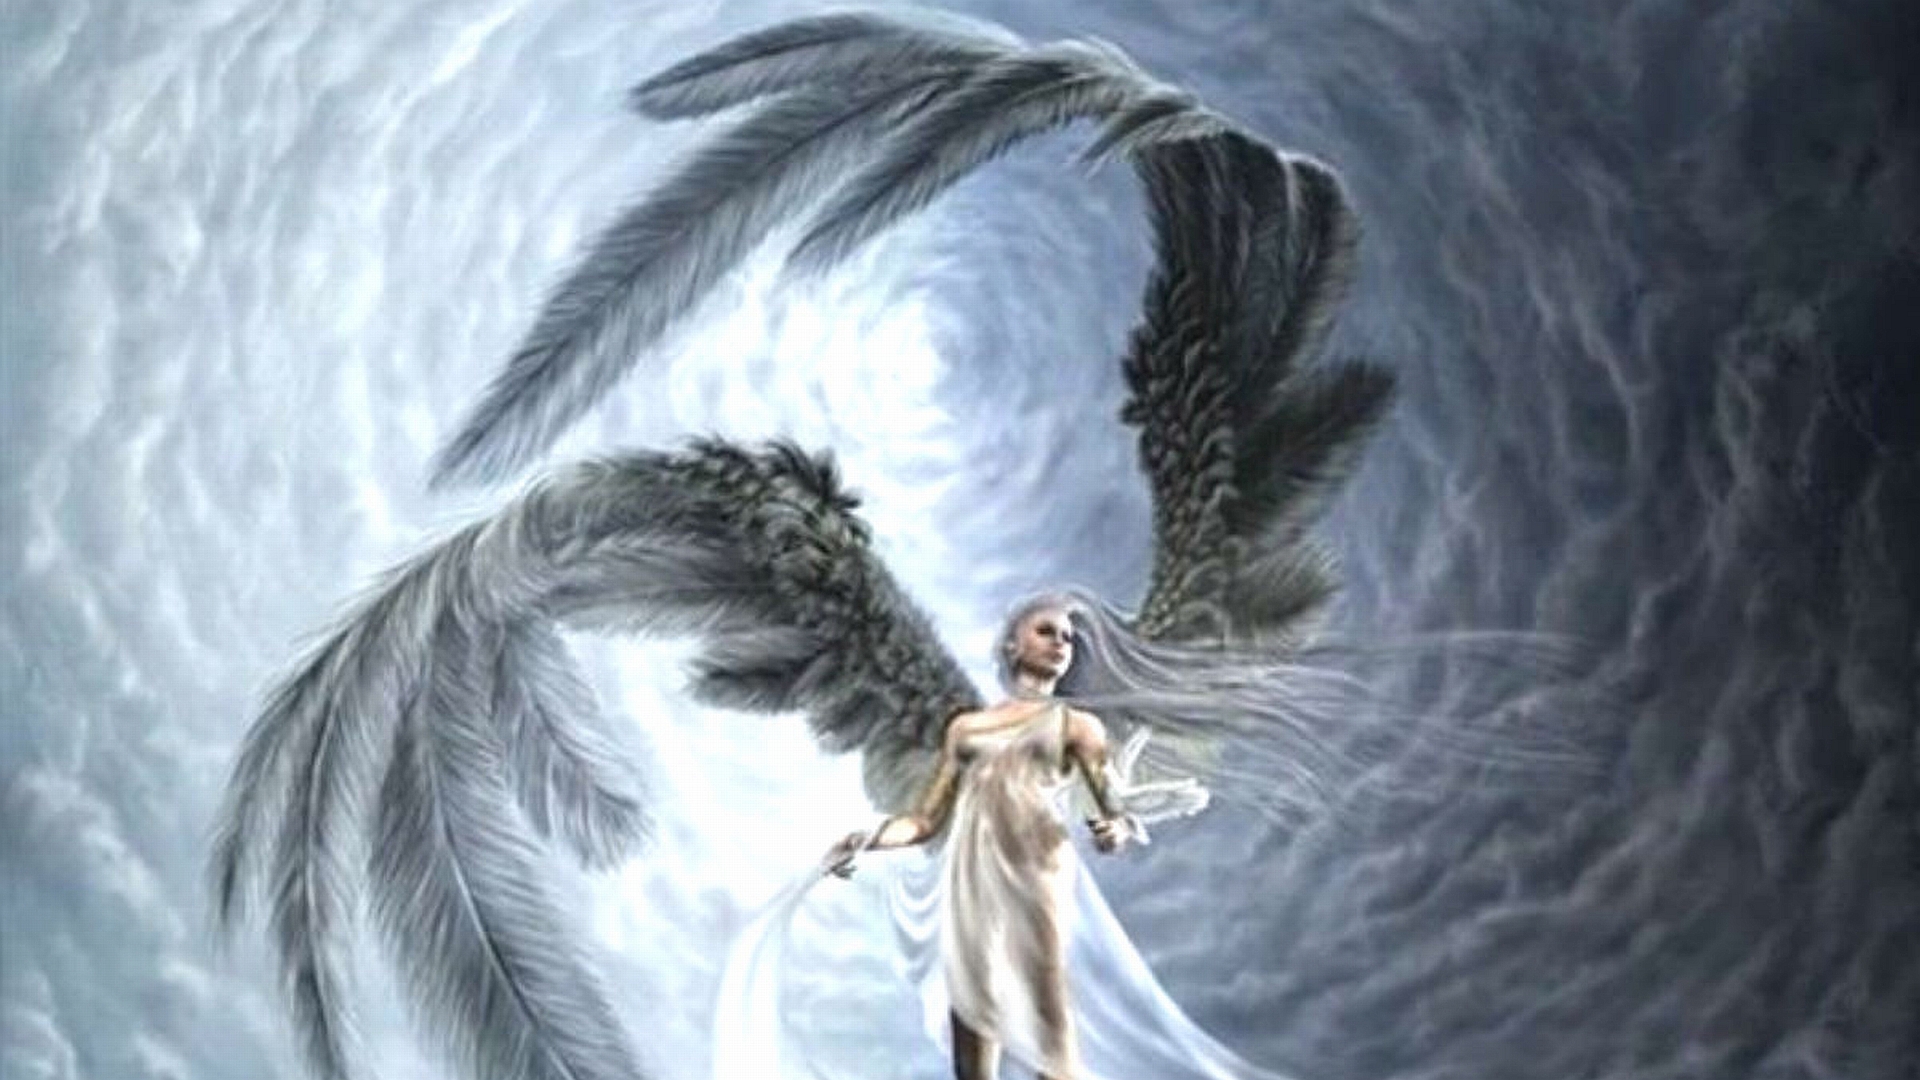 Free download MX 766 Angel Wallpaper Angel Adorable Desktop Photo [1920x1080] for your Desktop, Mobile & Tablet. Explore Free Angel Wallpaper. Free Angel Wallpaper, Blue Angels Wallpaper